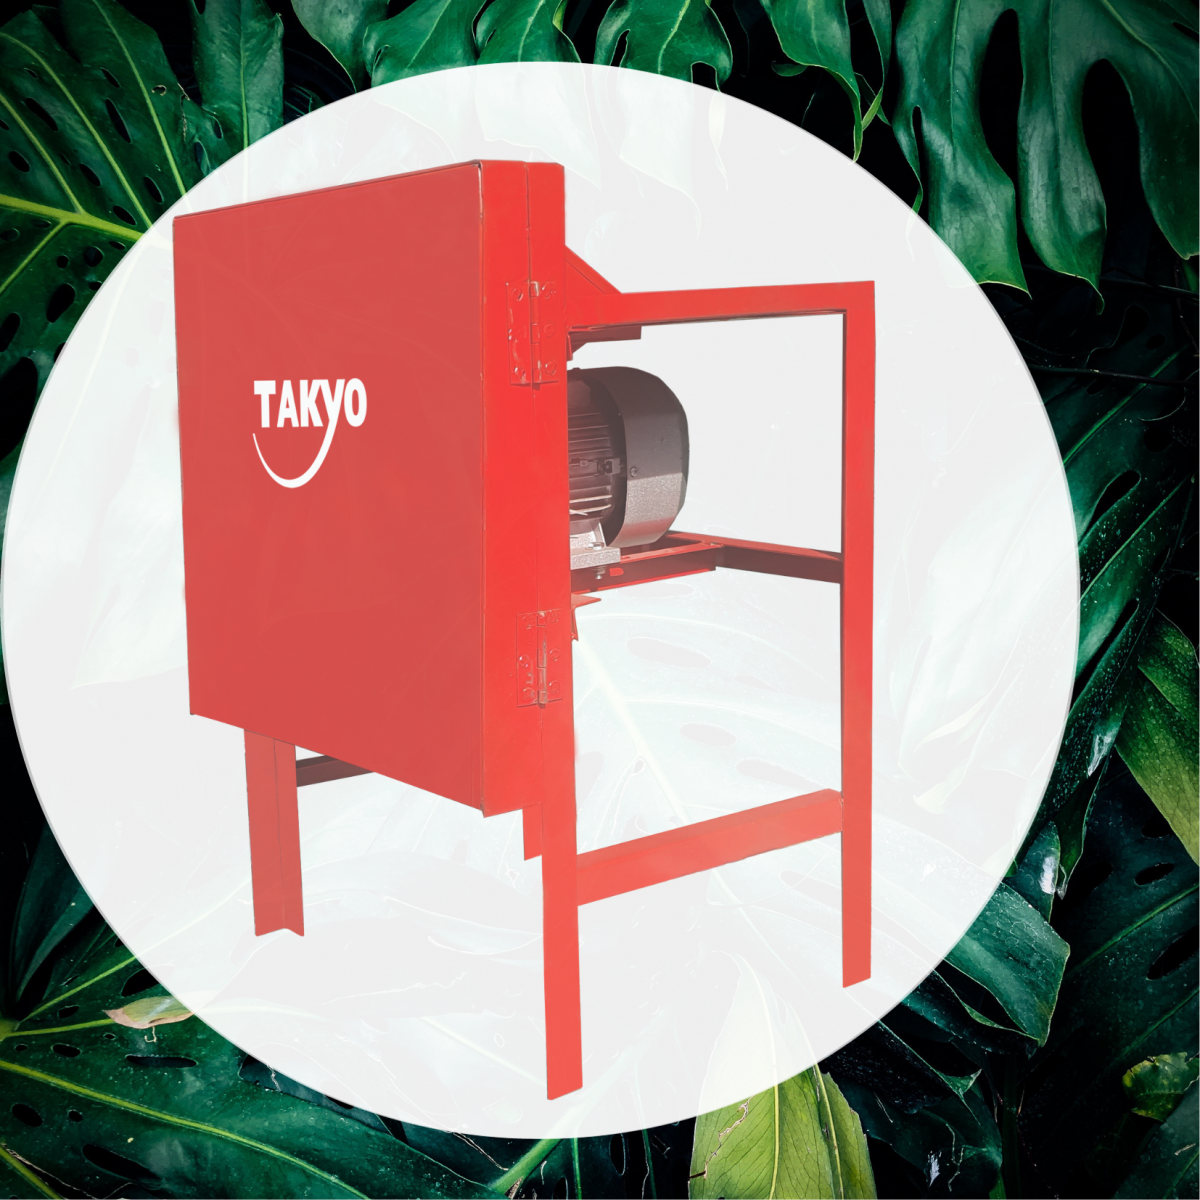 Bộ khung của máy thái chuối Takyo trang bị bộ khung chắc chắn